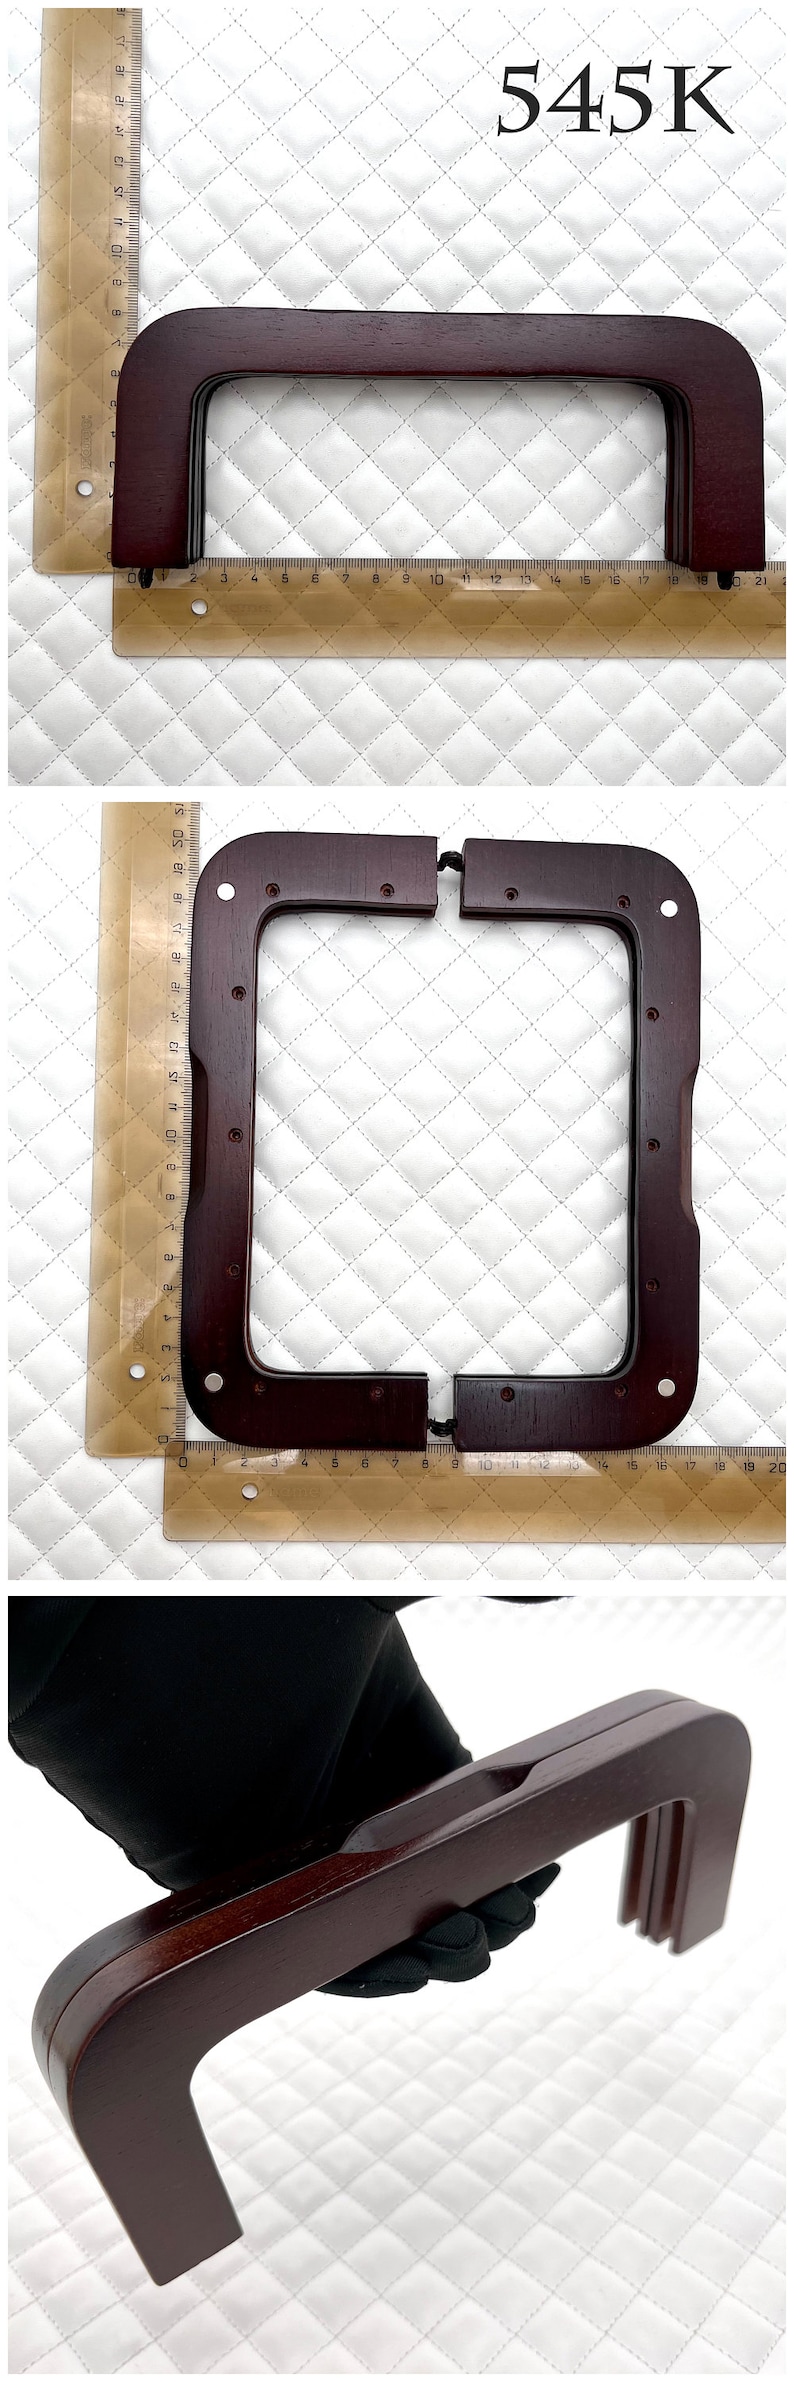 2 maten houten rechthoekige schroef-in-muntzak portemonnee Pouch Bag Clutch Frame, voor portemonnee tas Vervanging maken 545K 8" x 3 1/8"